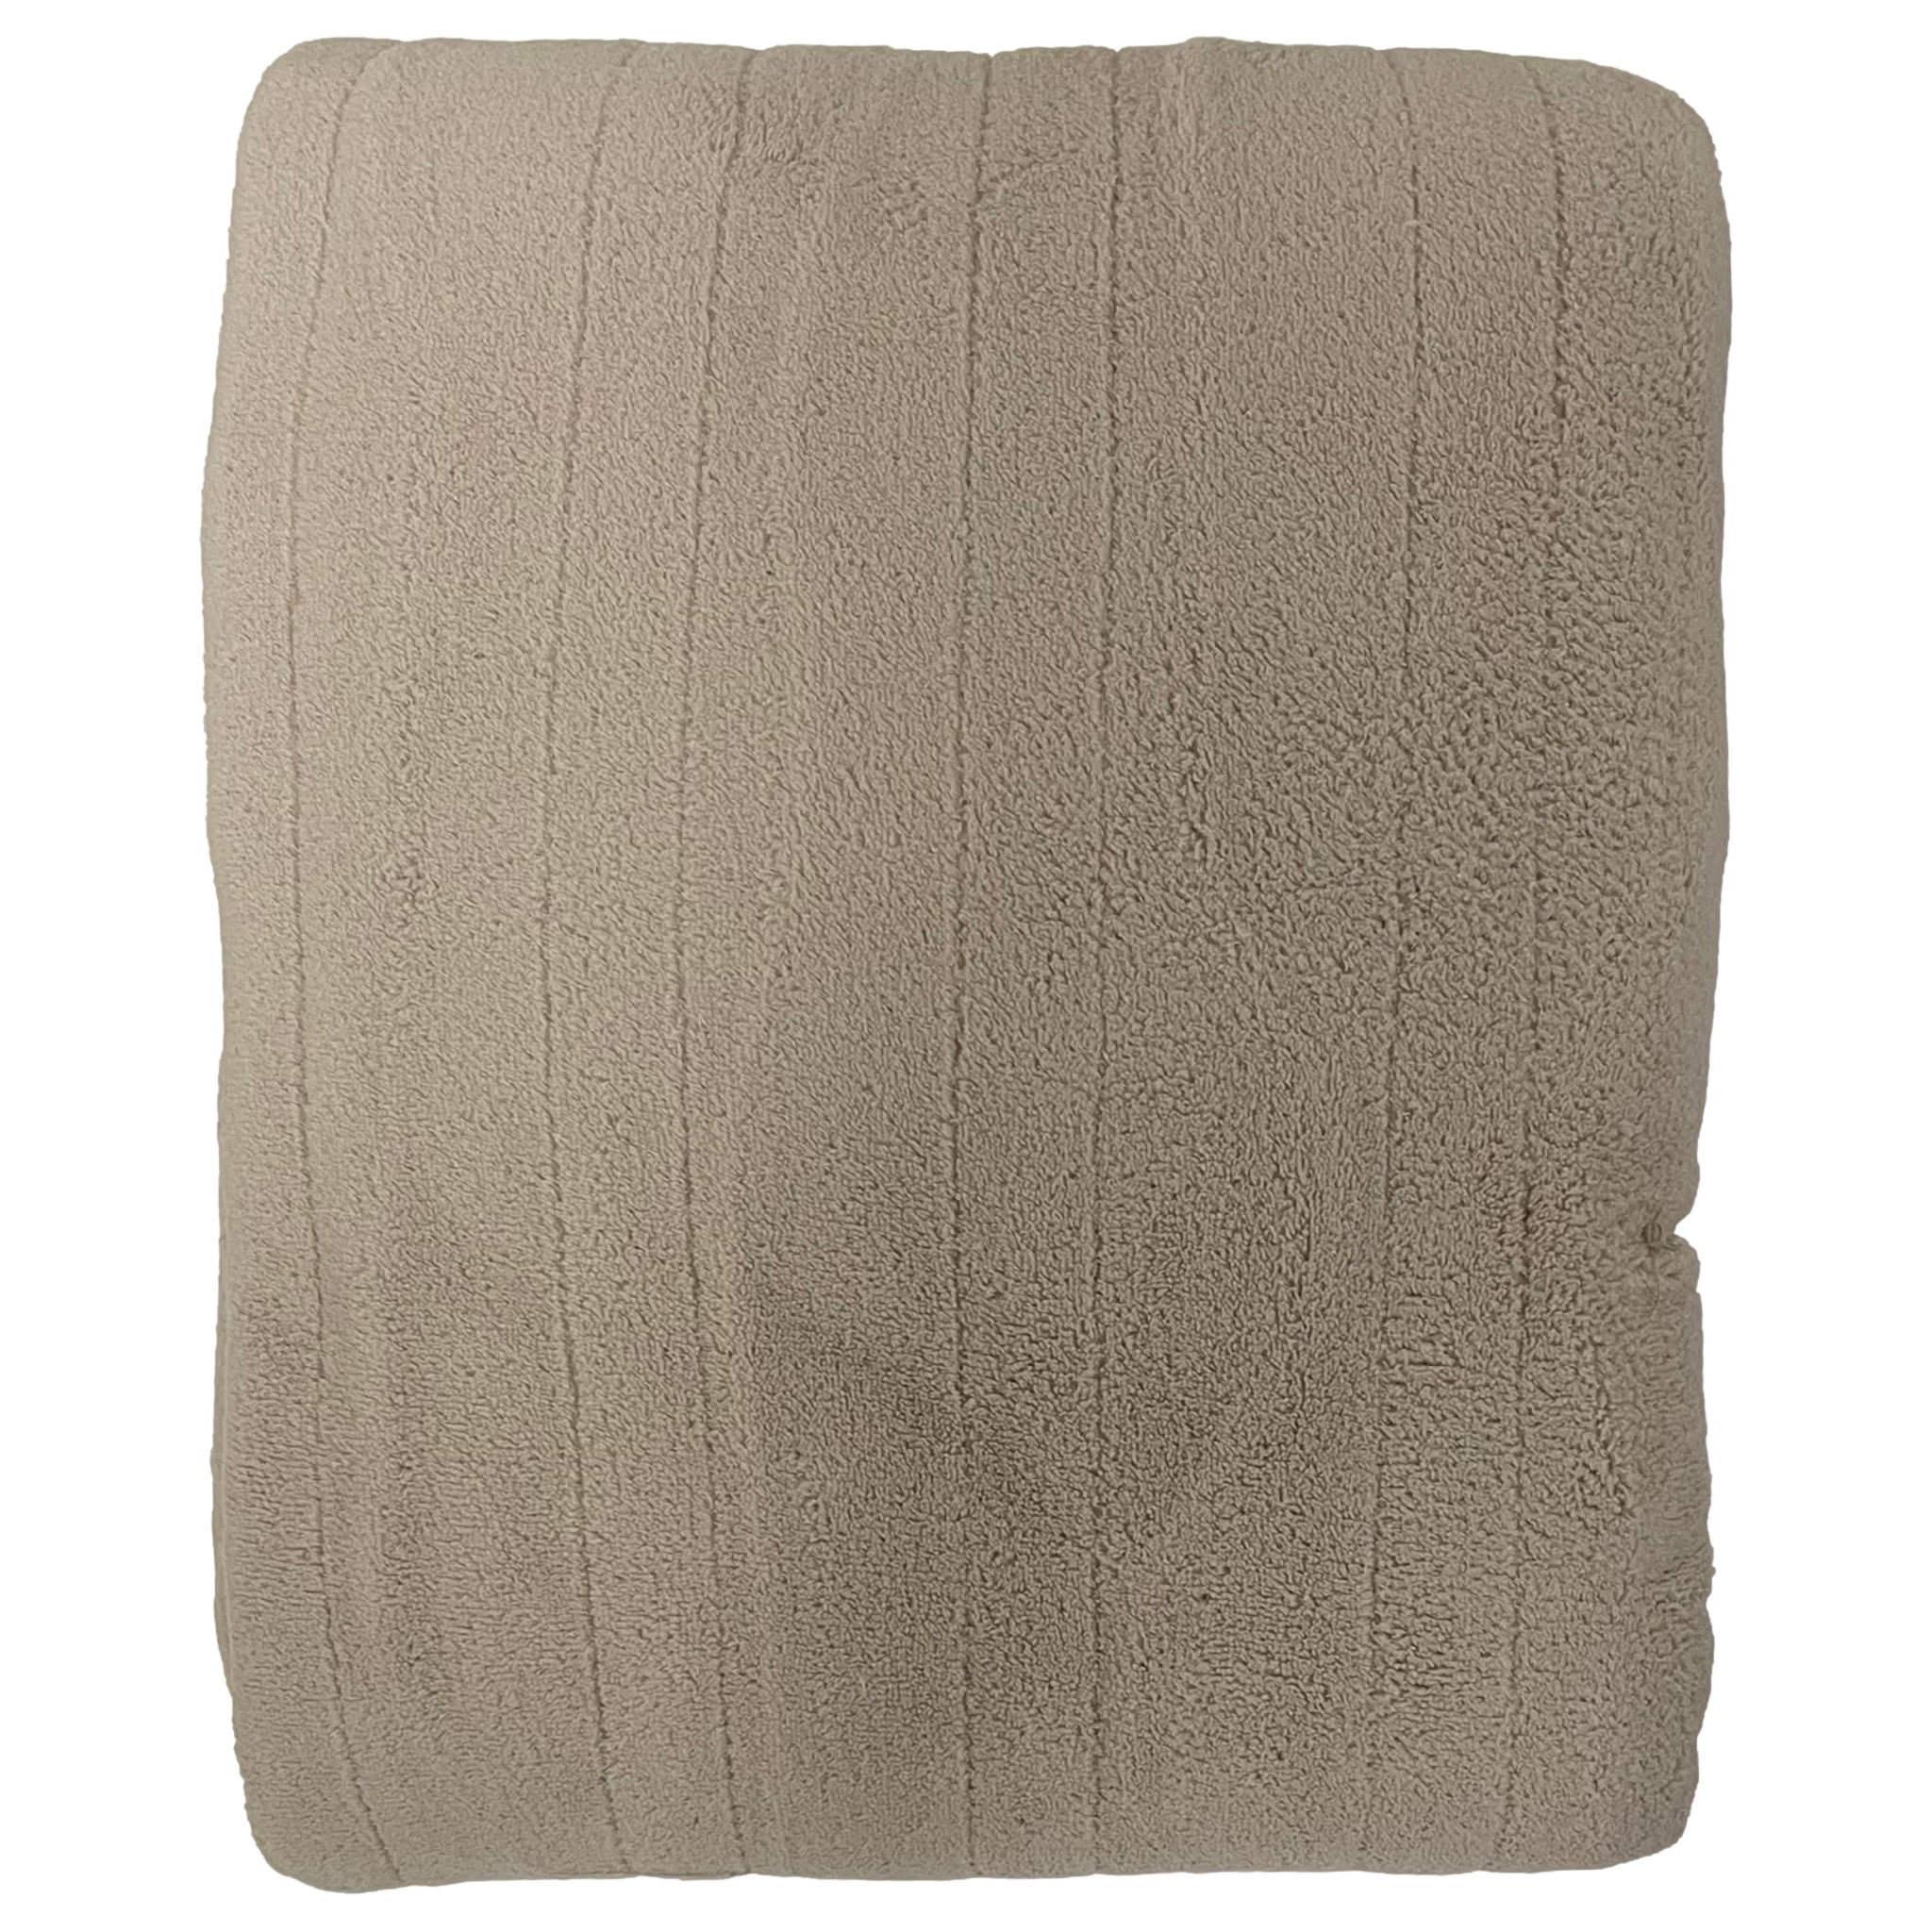 Biddeford Microplush Heated Blanket Beige F/Q 80" x 84" New 